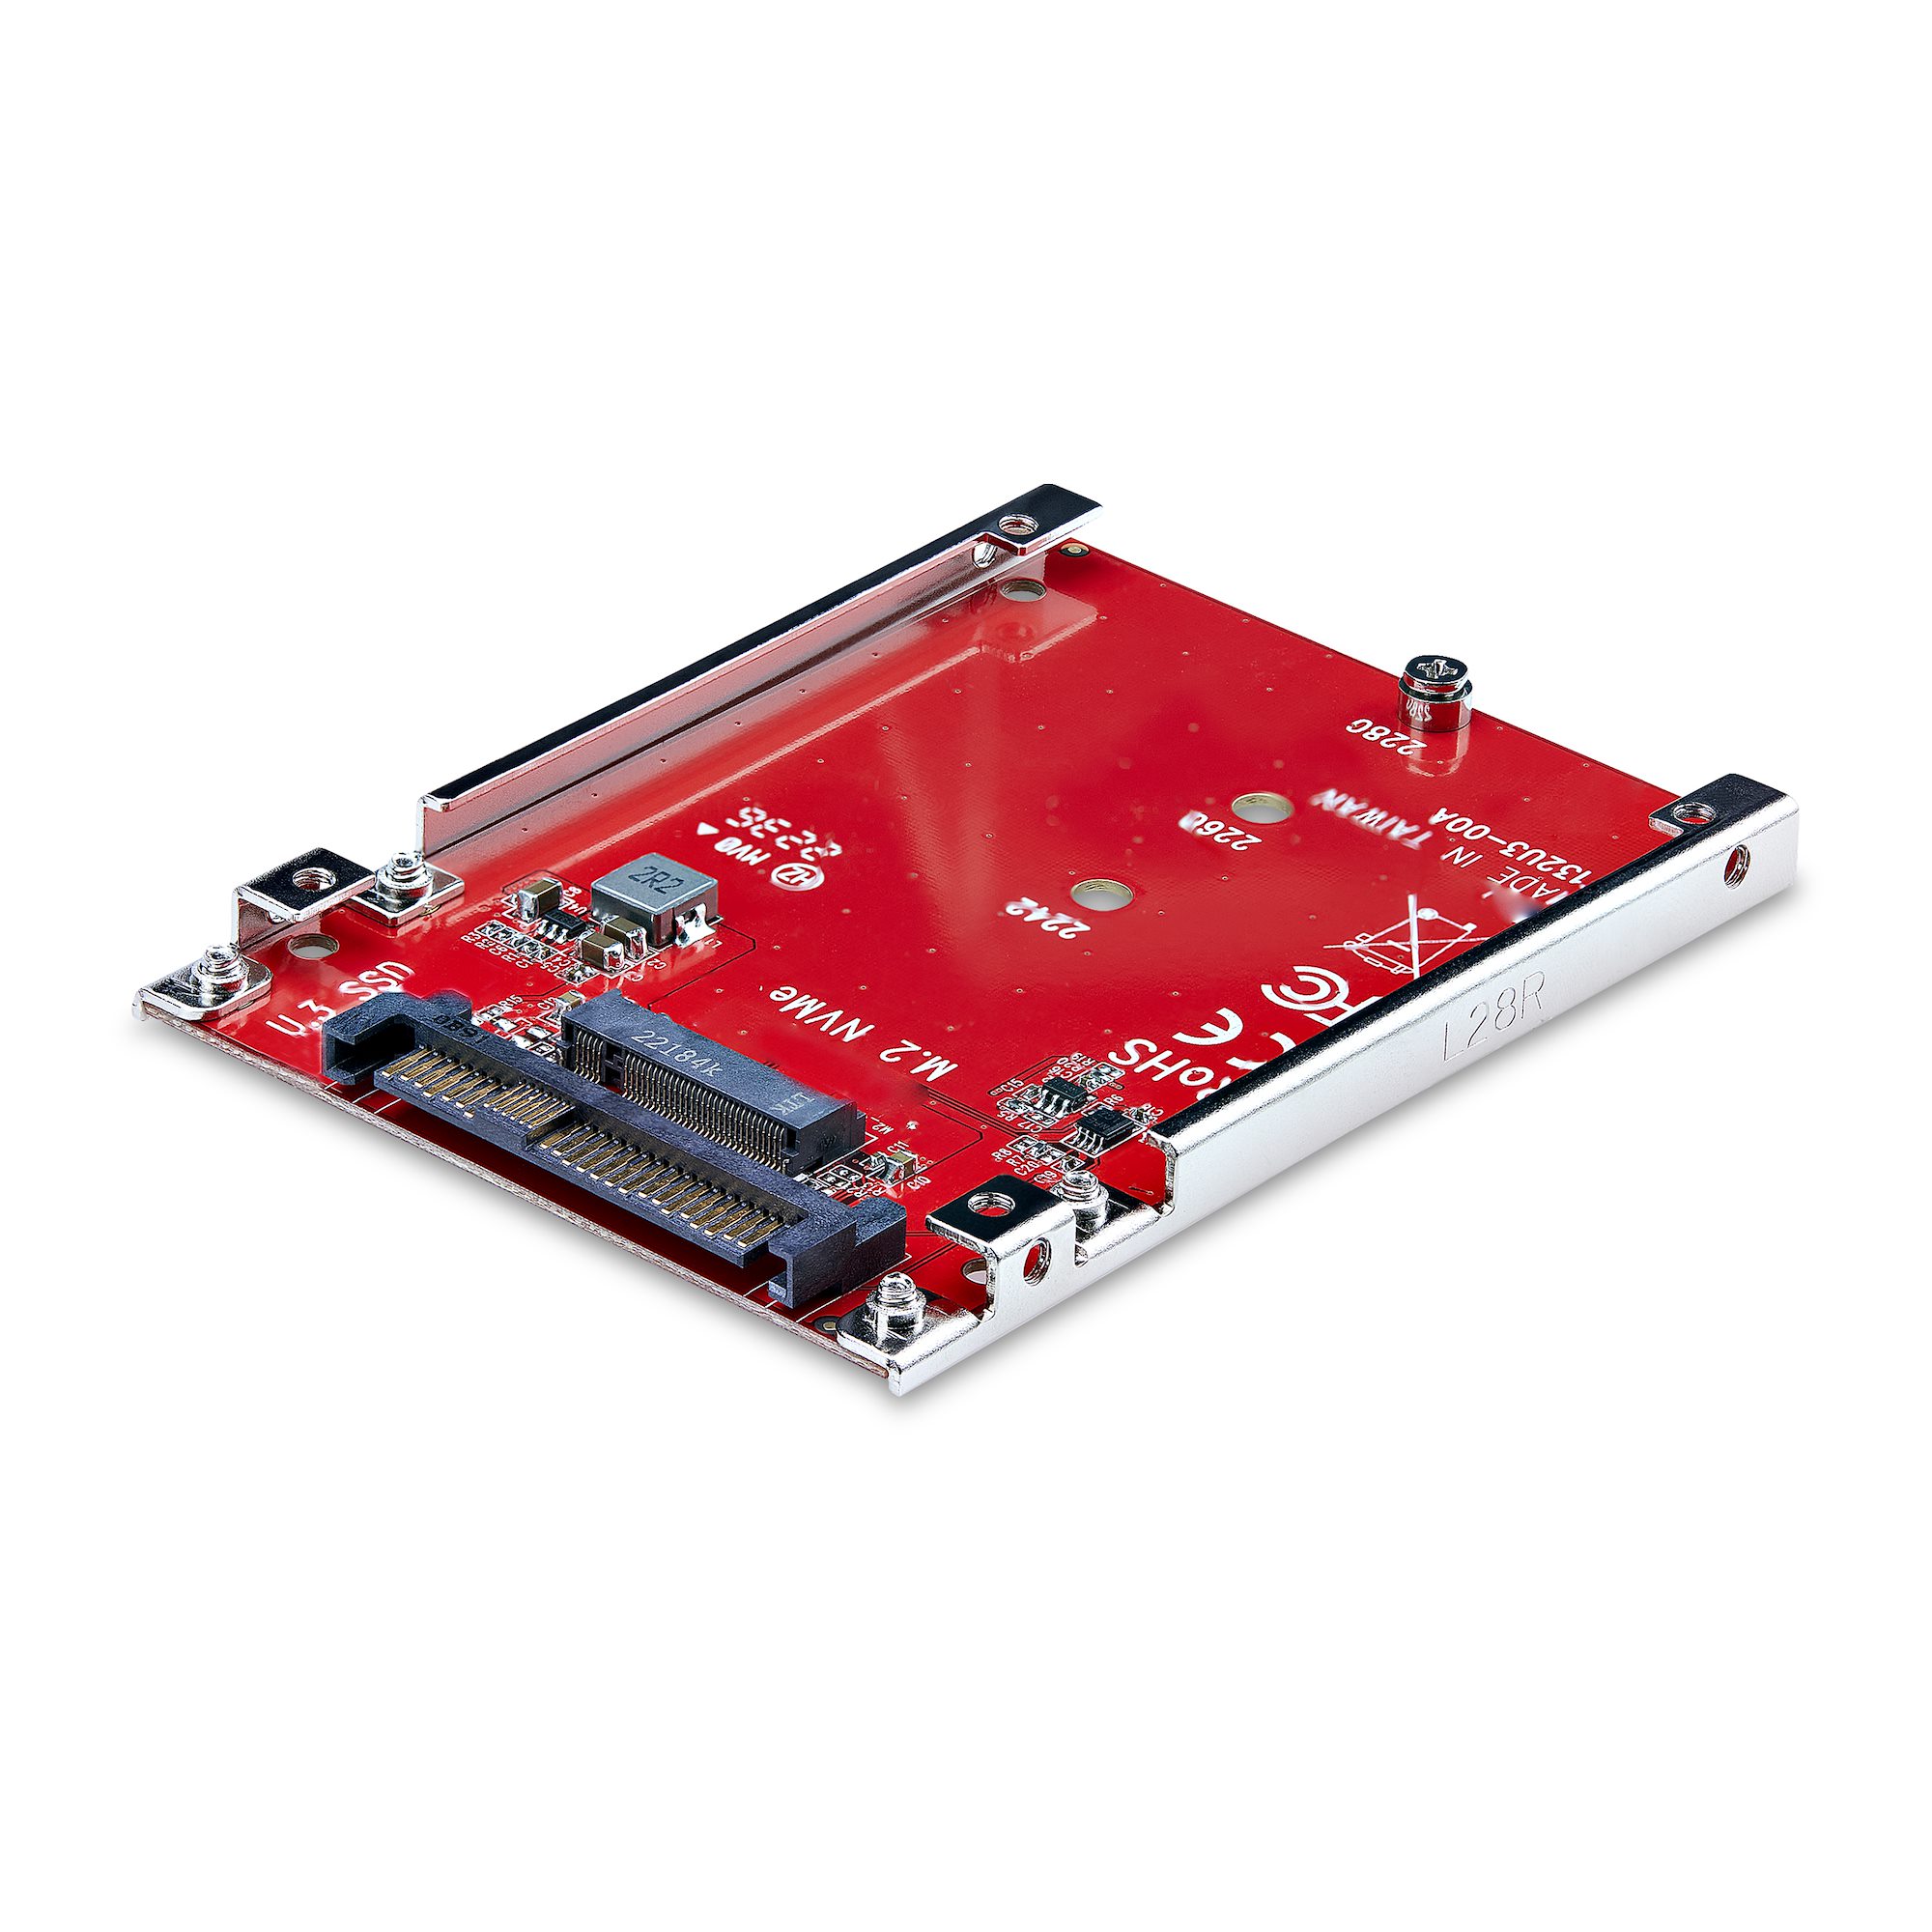 StarTech.com Adaptateur SSD M.2 NGFF à 3 ports - 1x M.2 PCIe (NVMe